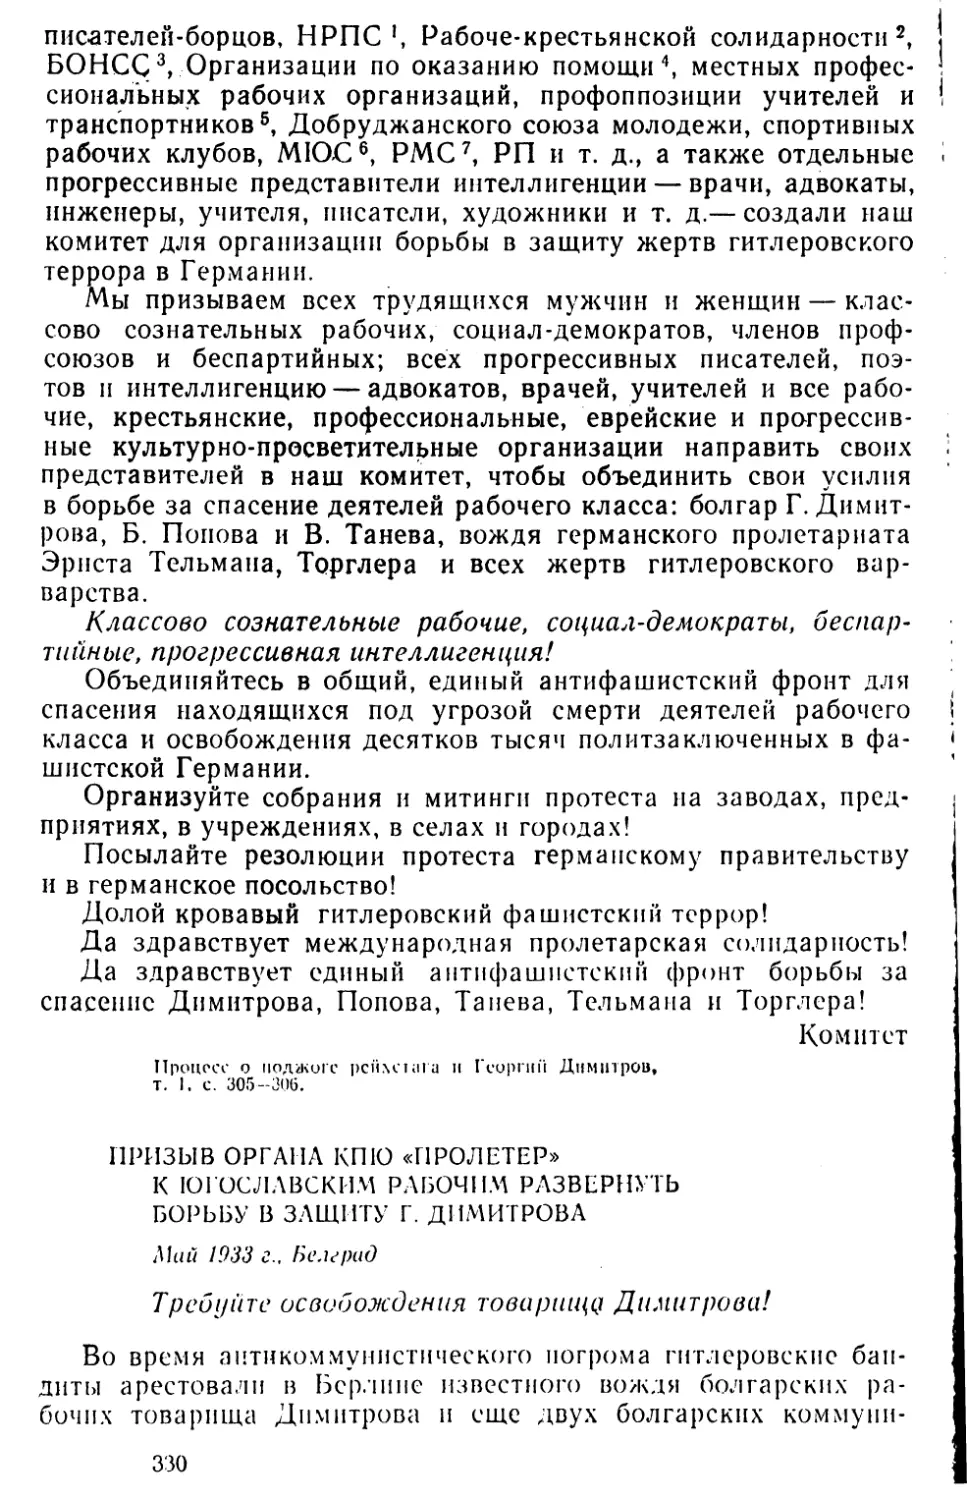 Призыв органа КПЮ «Пролетер» к югославским рабочим развернуть борьбу в защиту Г. Димитрова. Май 1933 г